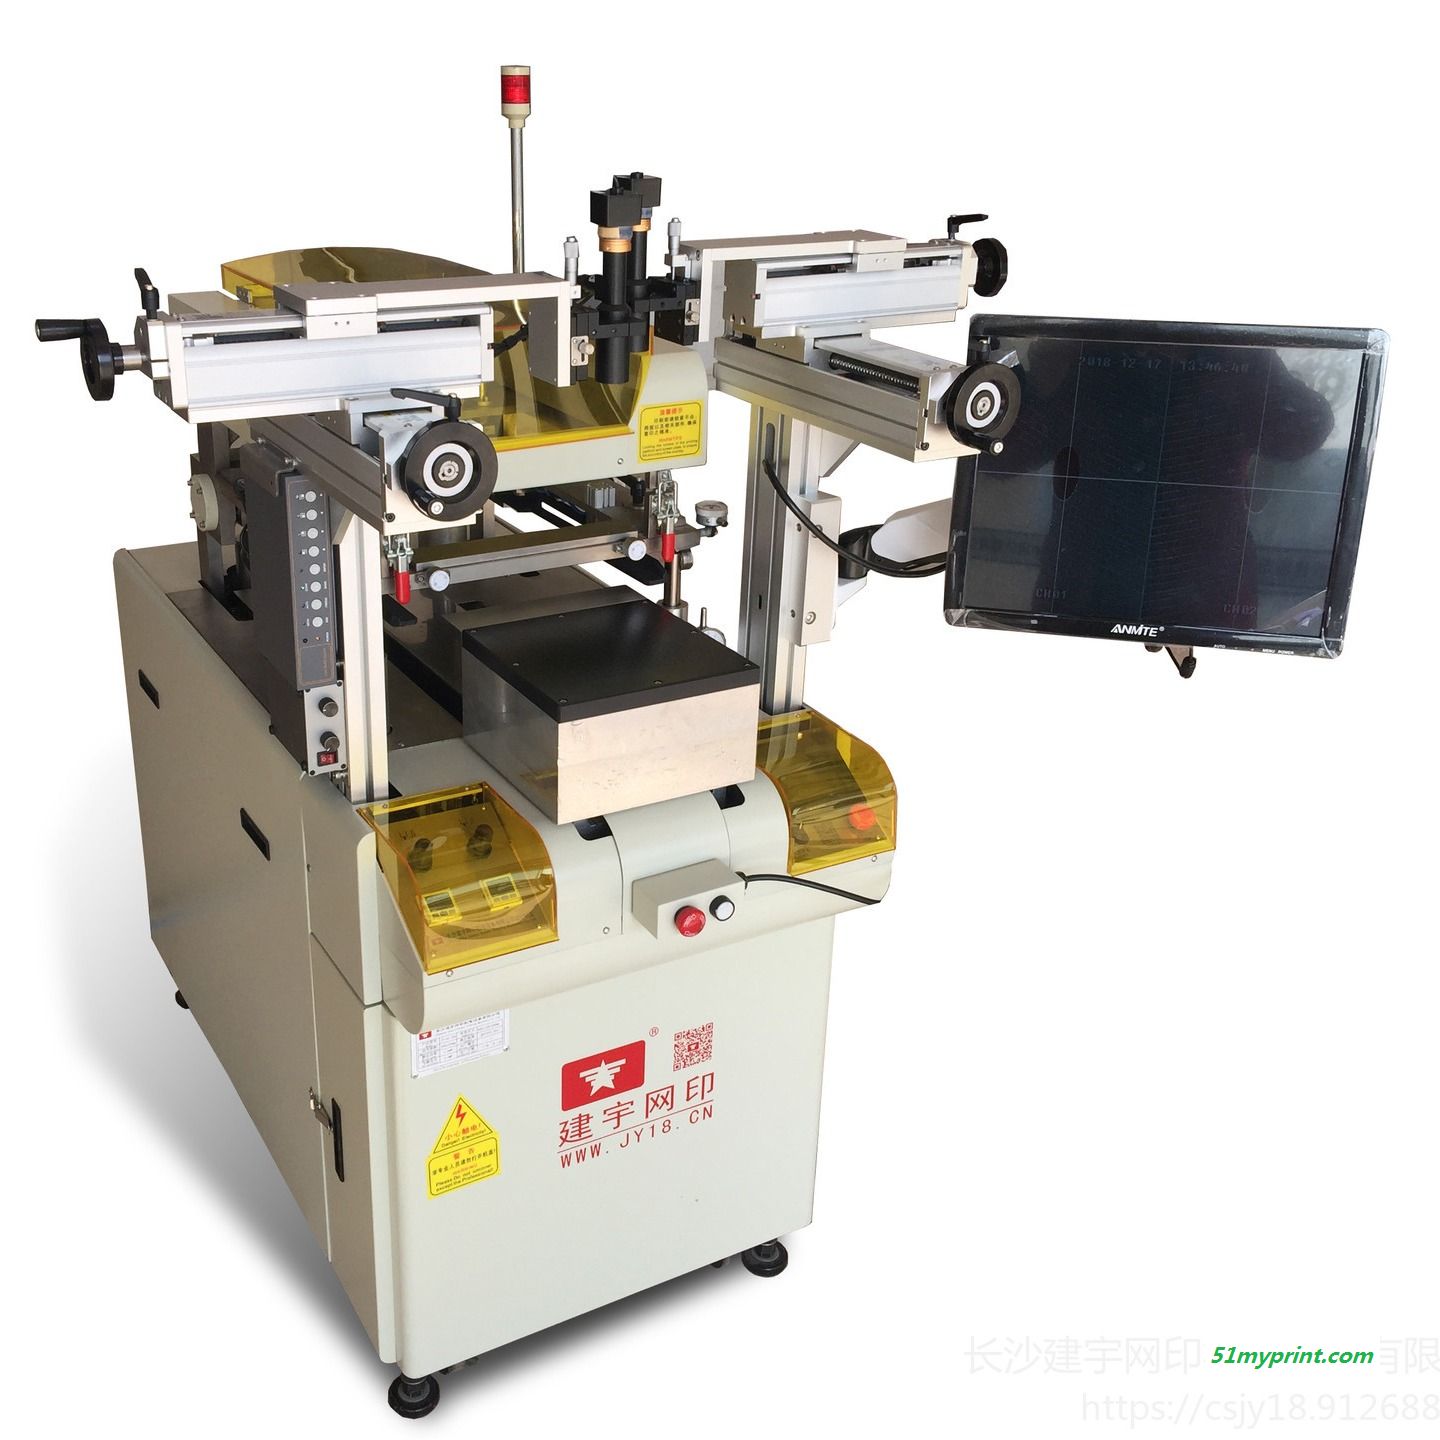 建宇网印厂家供应绝缘介质印刷机 可用于导体印刷 DEK厚膜印刷 电热片印刷